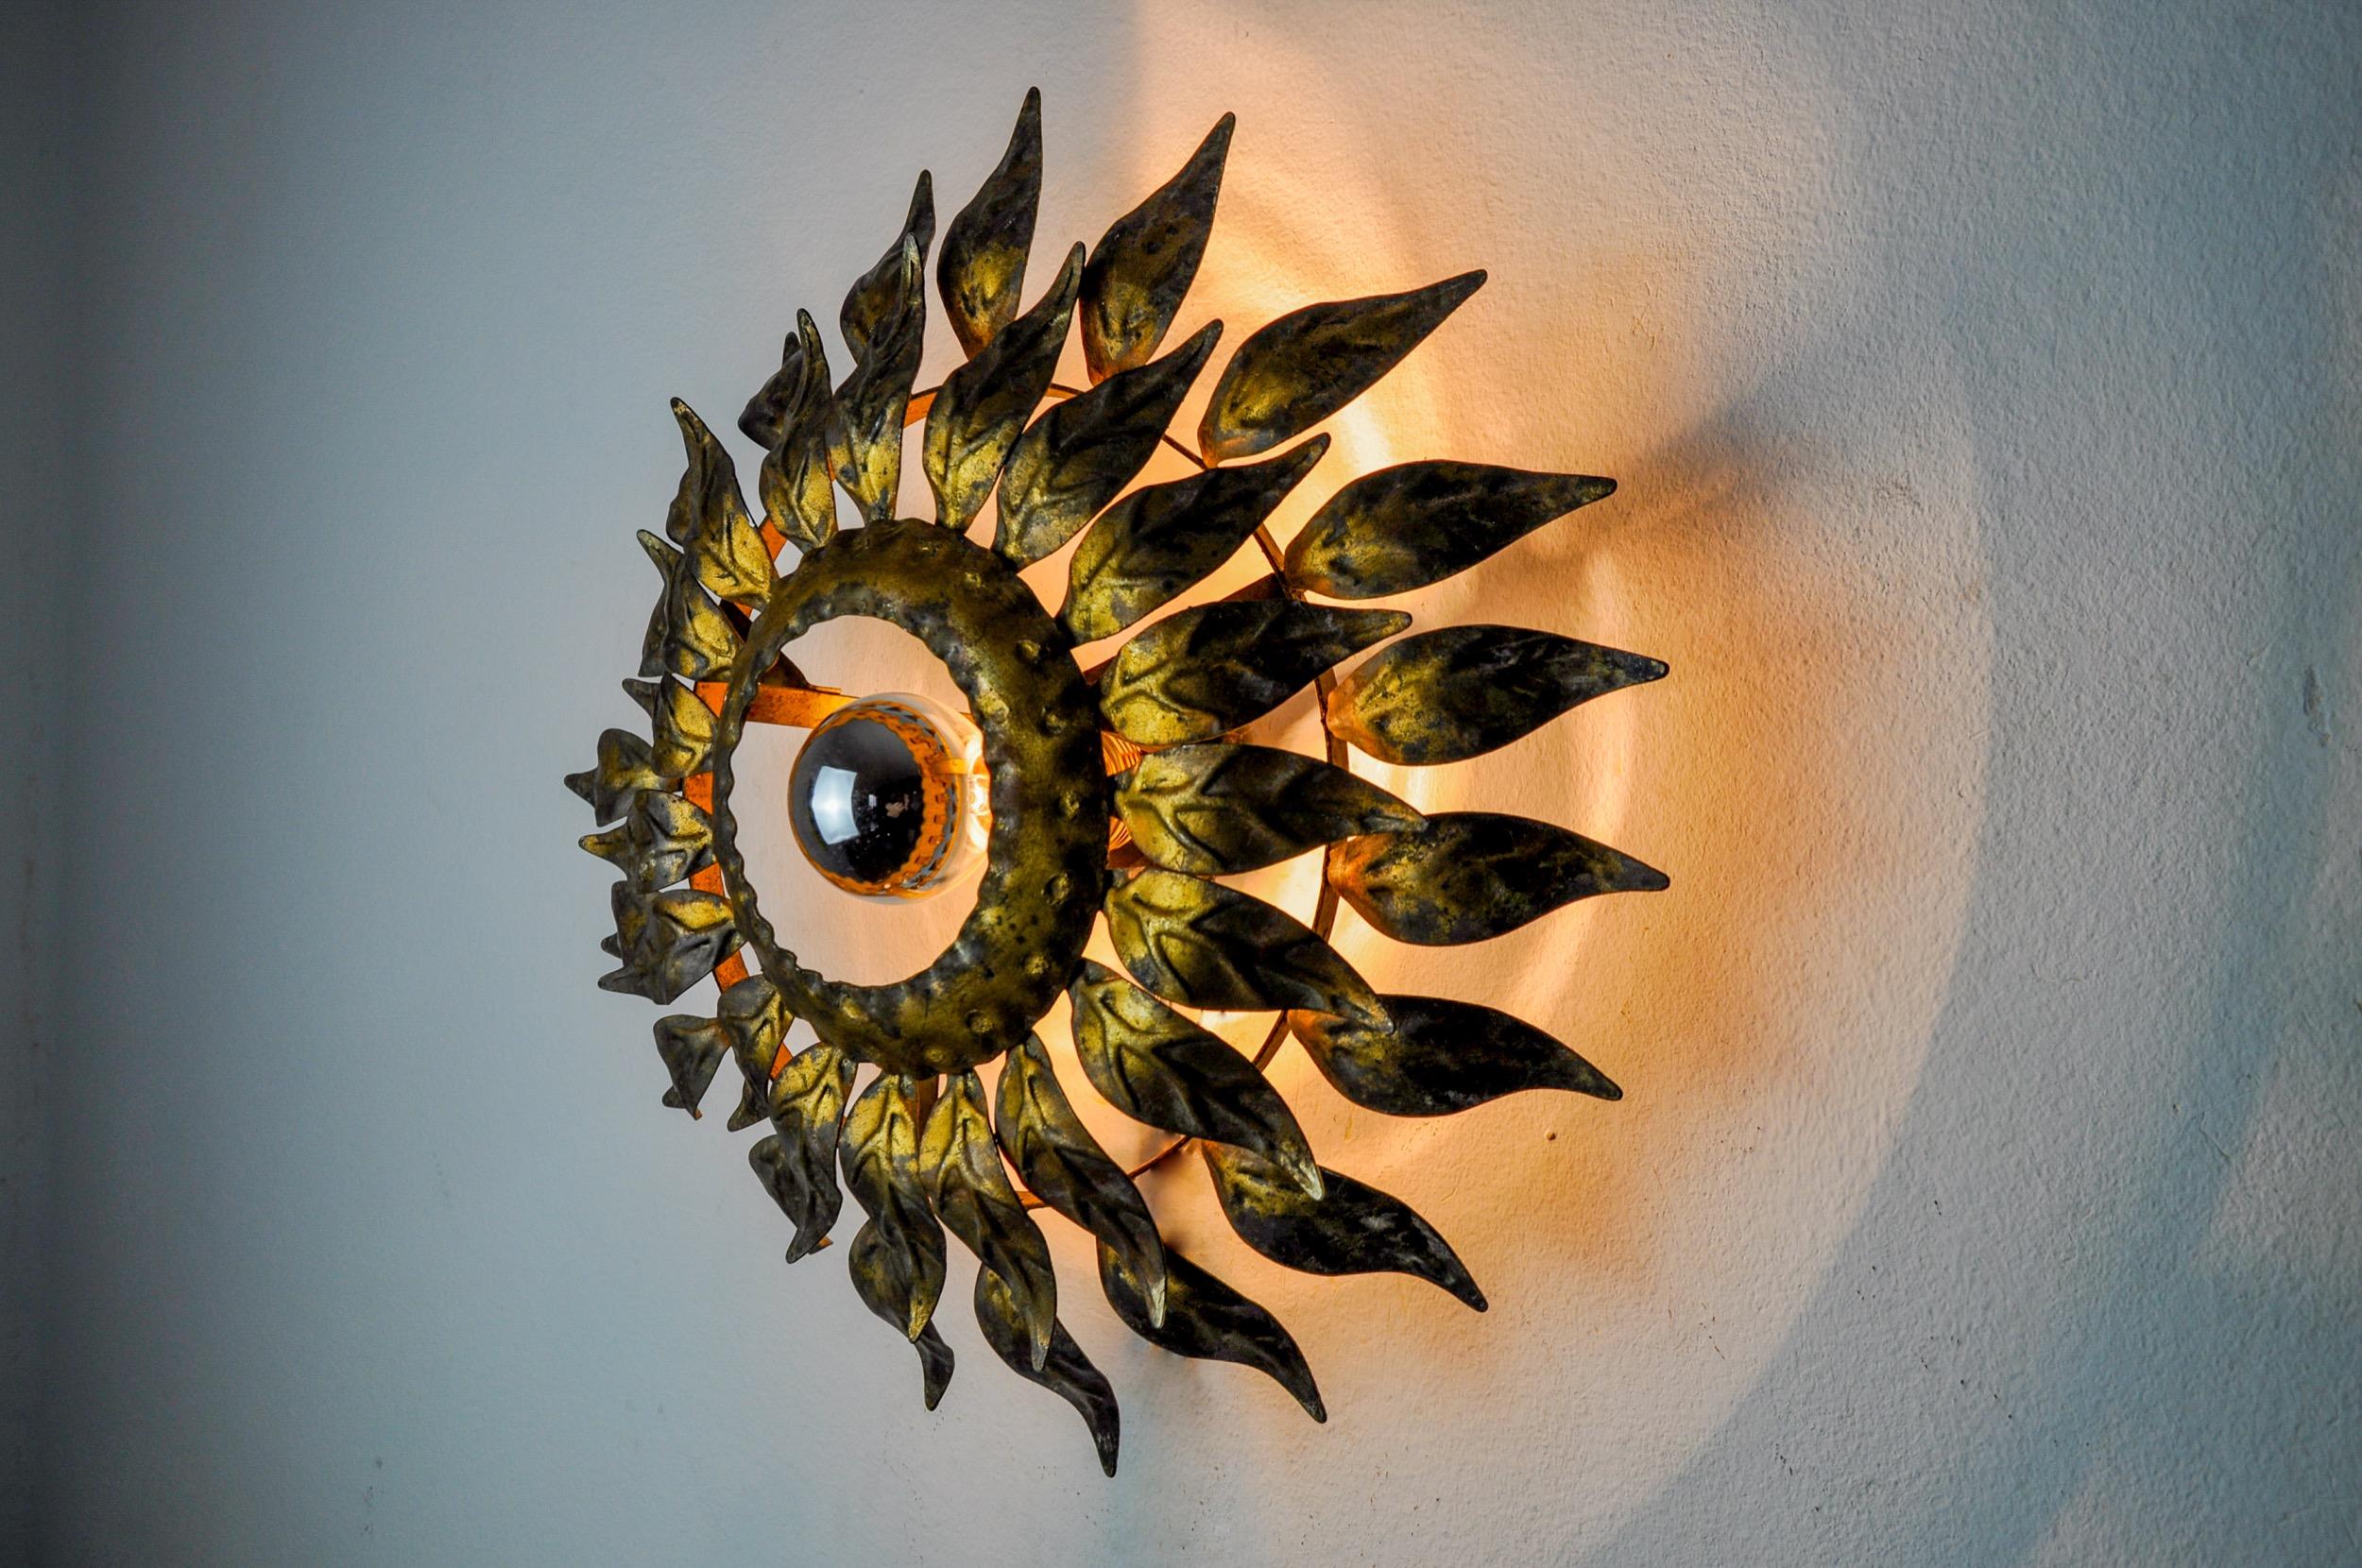 Très belle et rare lampe solaire, conçue et produite par ferro arte en Espagne dans les années 1960. Structure en métal doré à la feuille d'or. Objet unique qui illuminera à merveille et apportera une véritable touche design à votre intérieur.